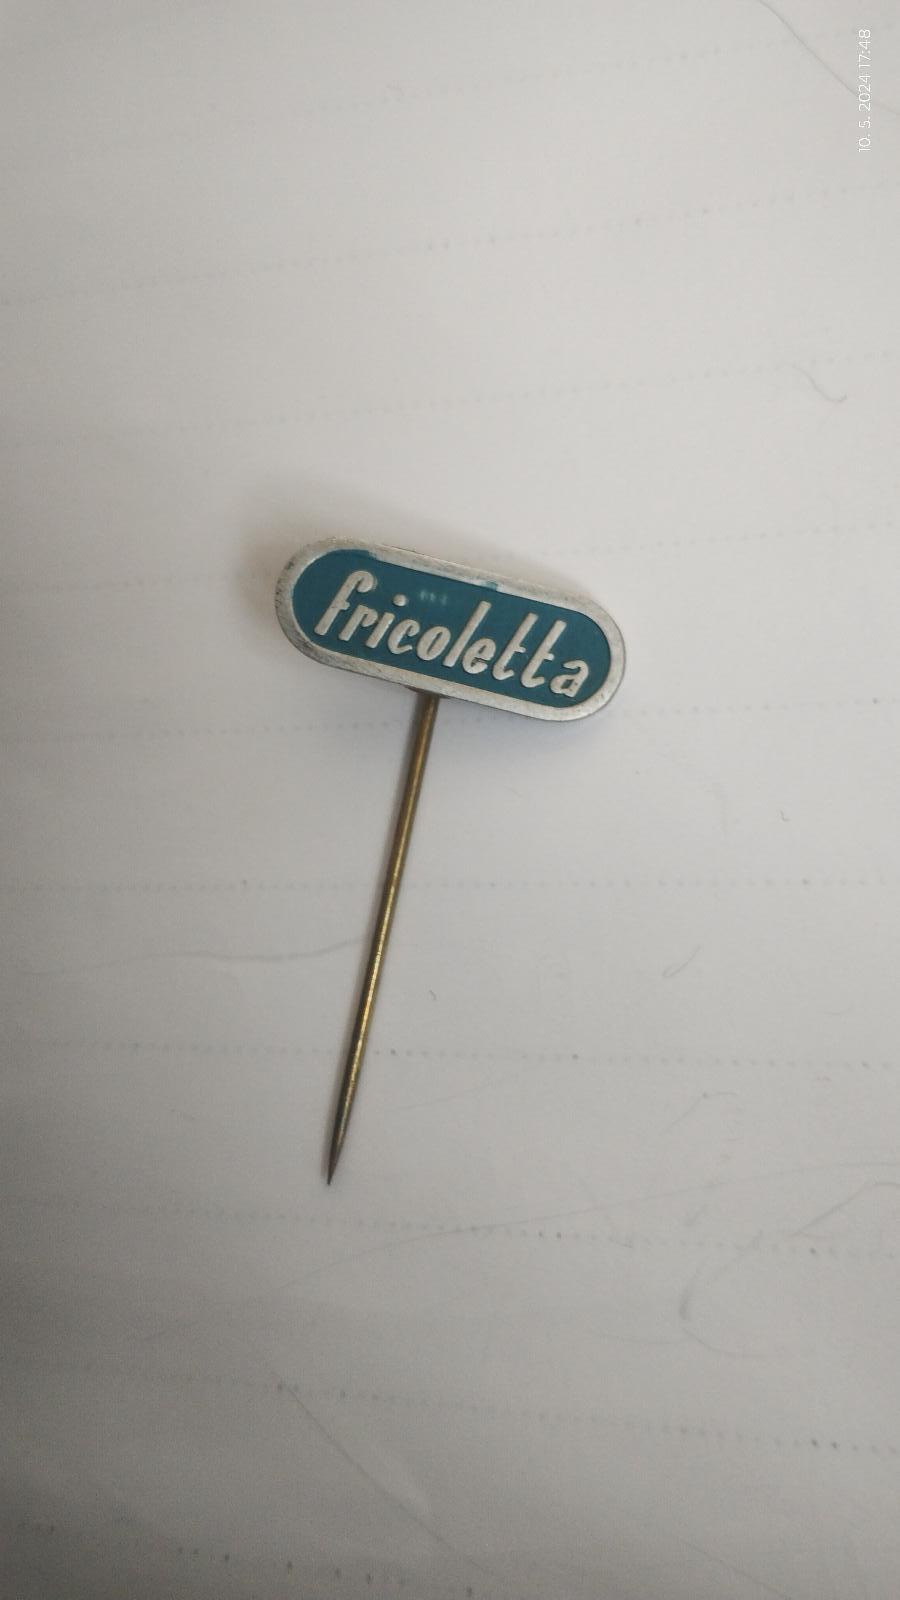 Odznak Fricoletta - Odznaky, nášivky a medaily